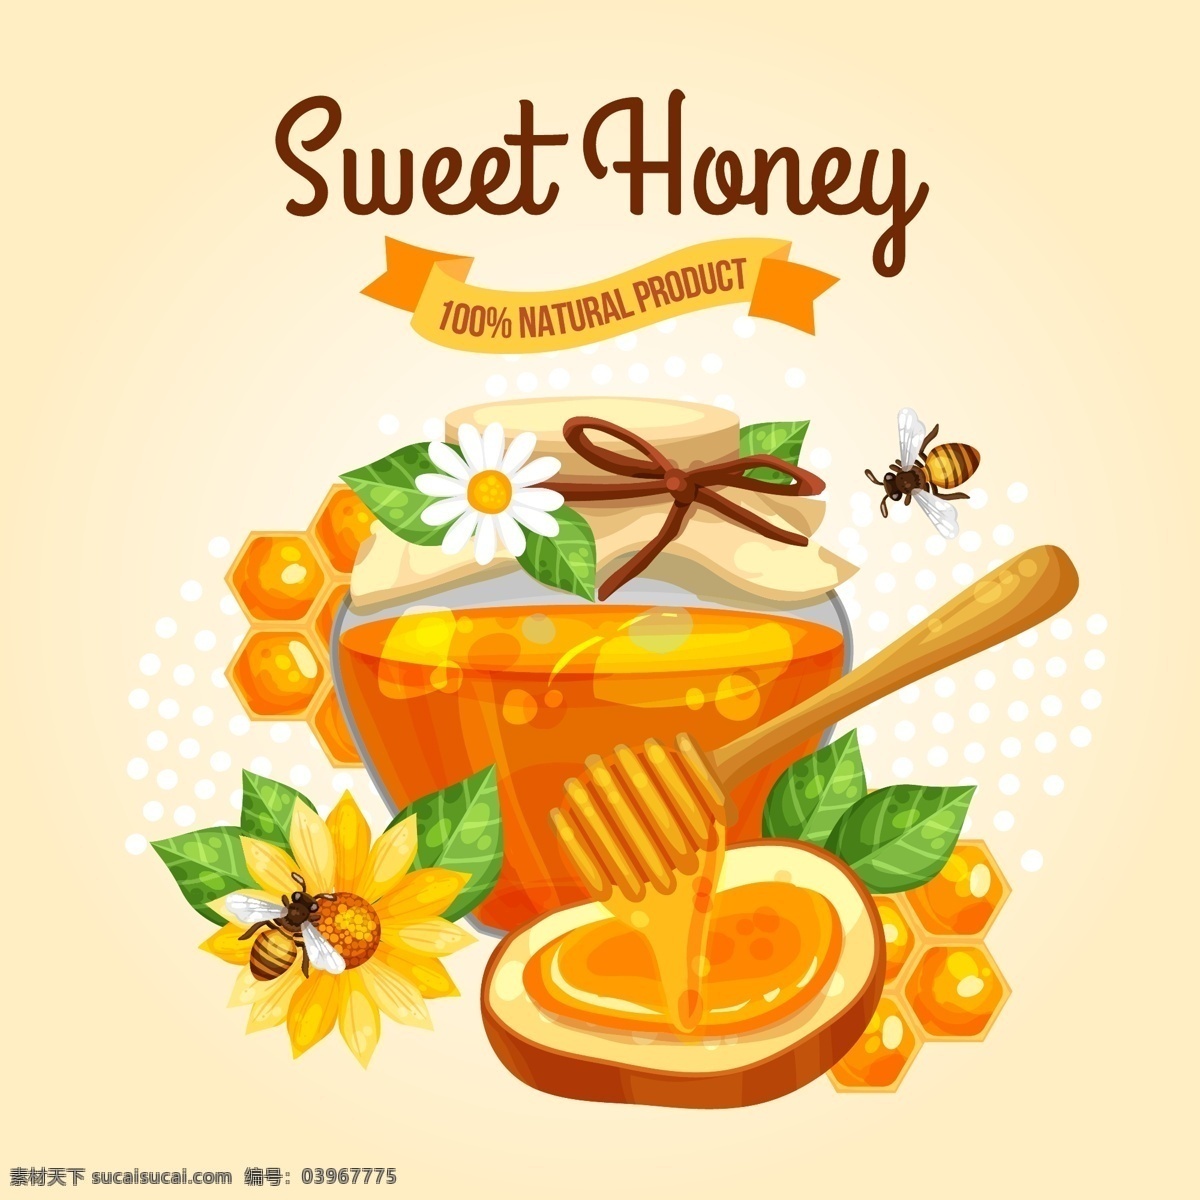 蜂蜜图片 蜂蜜 蜜 蜜糖 蜂巢 蜜蜂 蜜罐 蜂王浆 蜂胶 蜂蜡